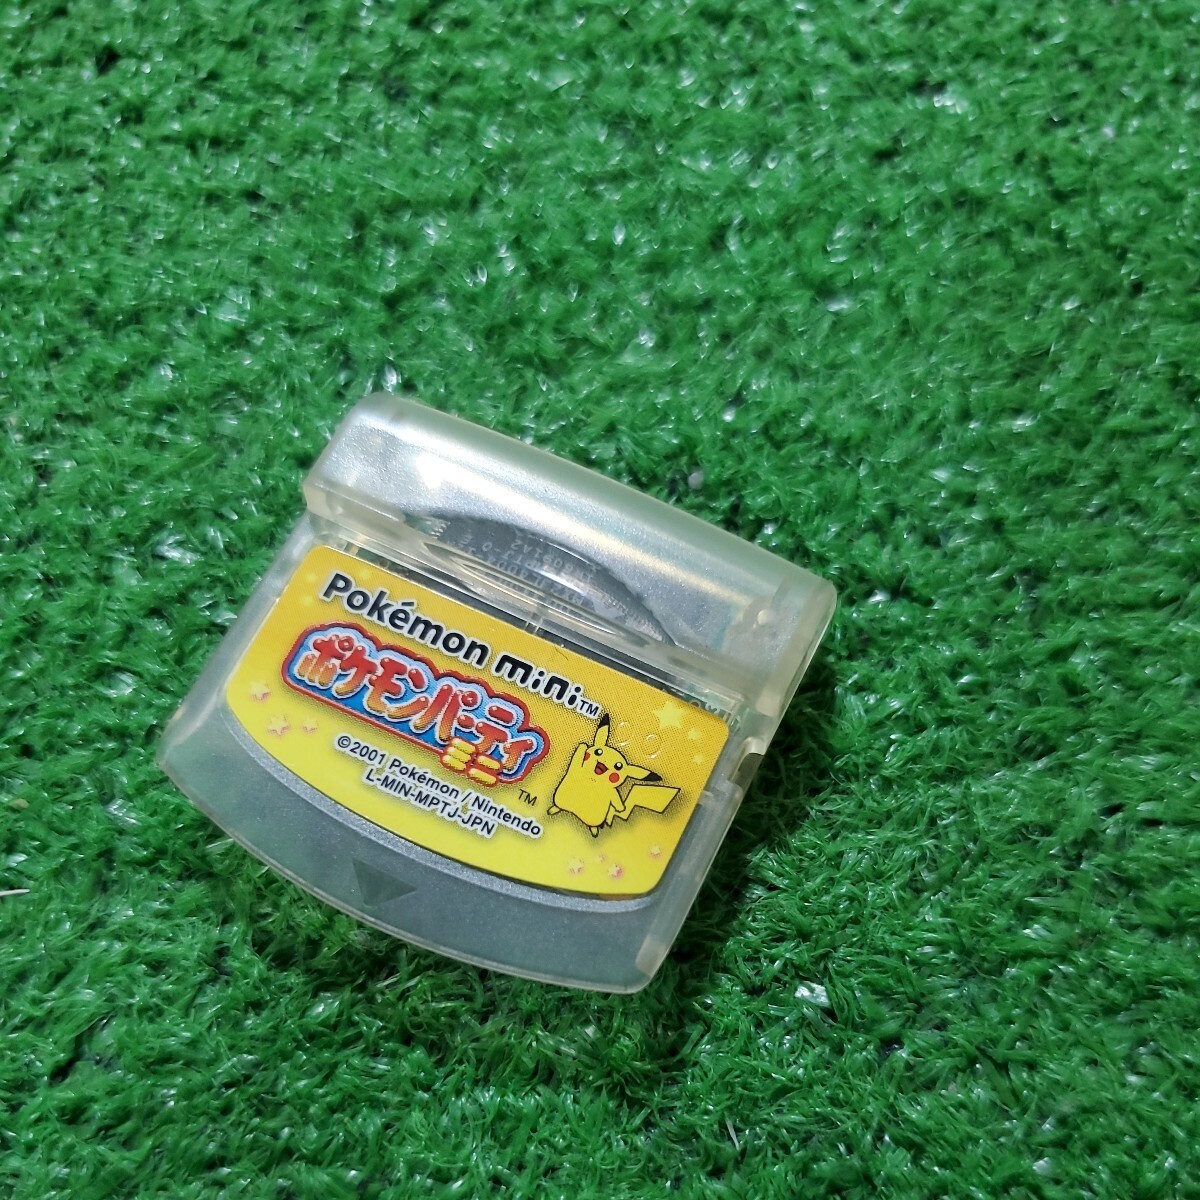 Pokemon mini Pokemon Mini exclusive use cartridge Pokemon party Mini operation verification ending game soft postage 230 jpy 